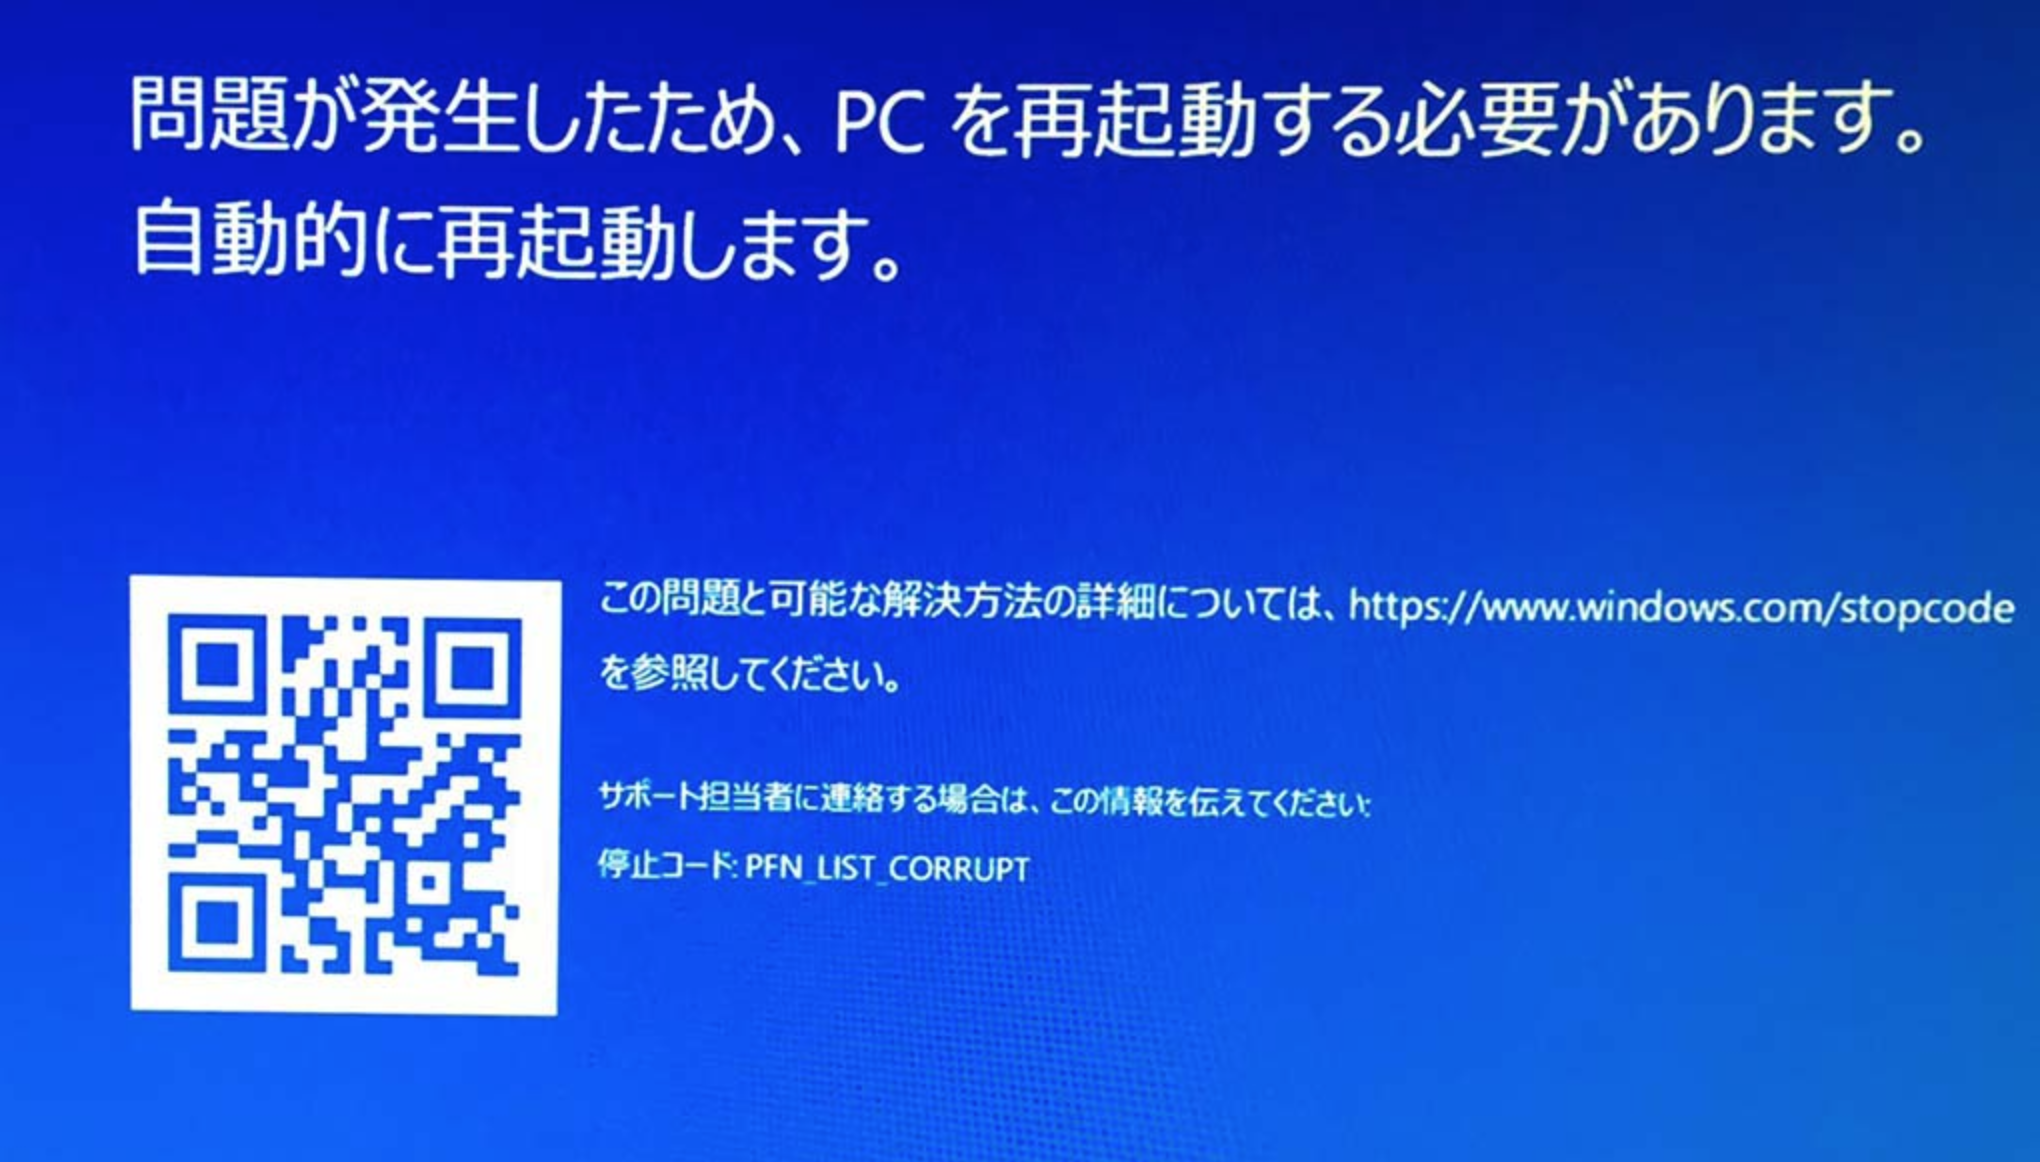 Ошибка PFN LIST CORRUPT - появление синего экрана на Windows 10, 8 и 7 Чаще причина связана с драйверами Так, как исправить эту проблему